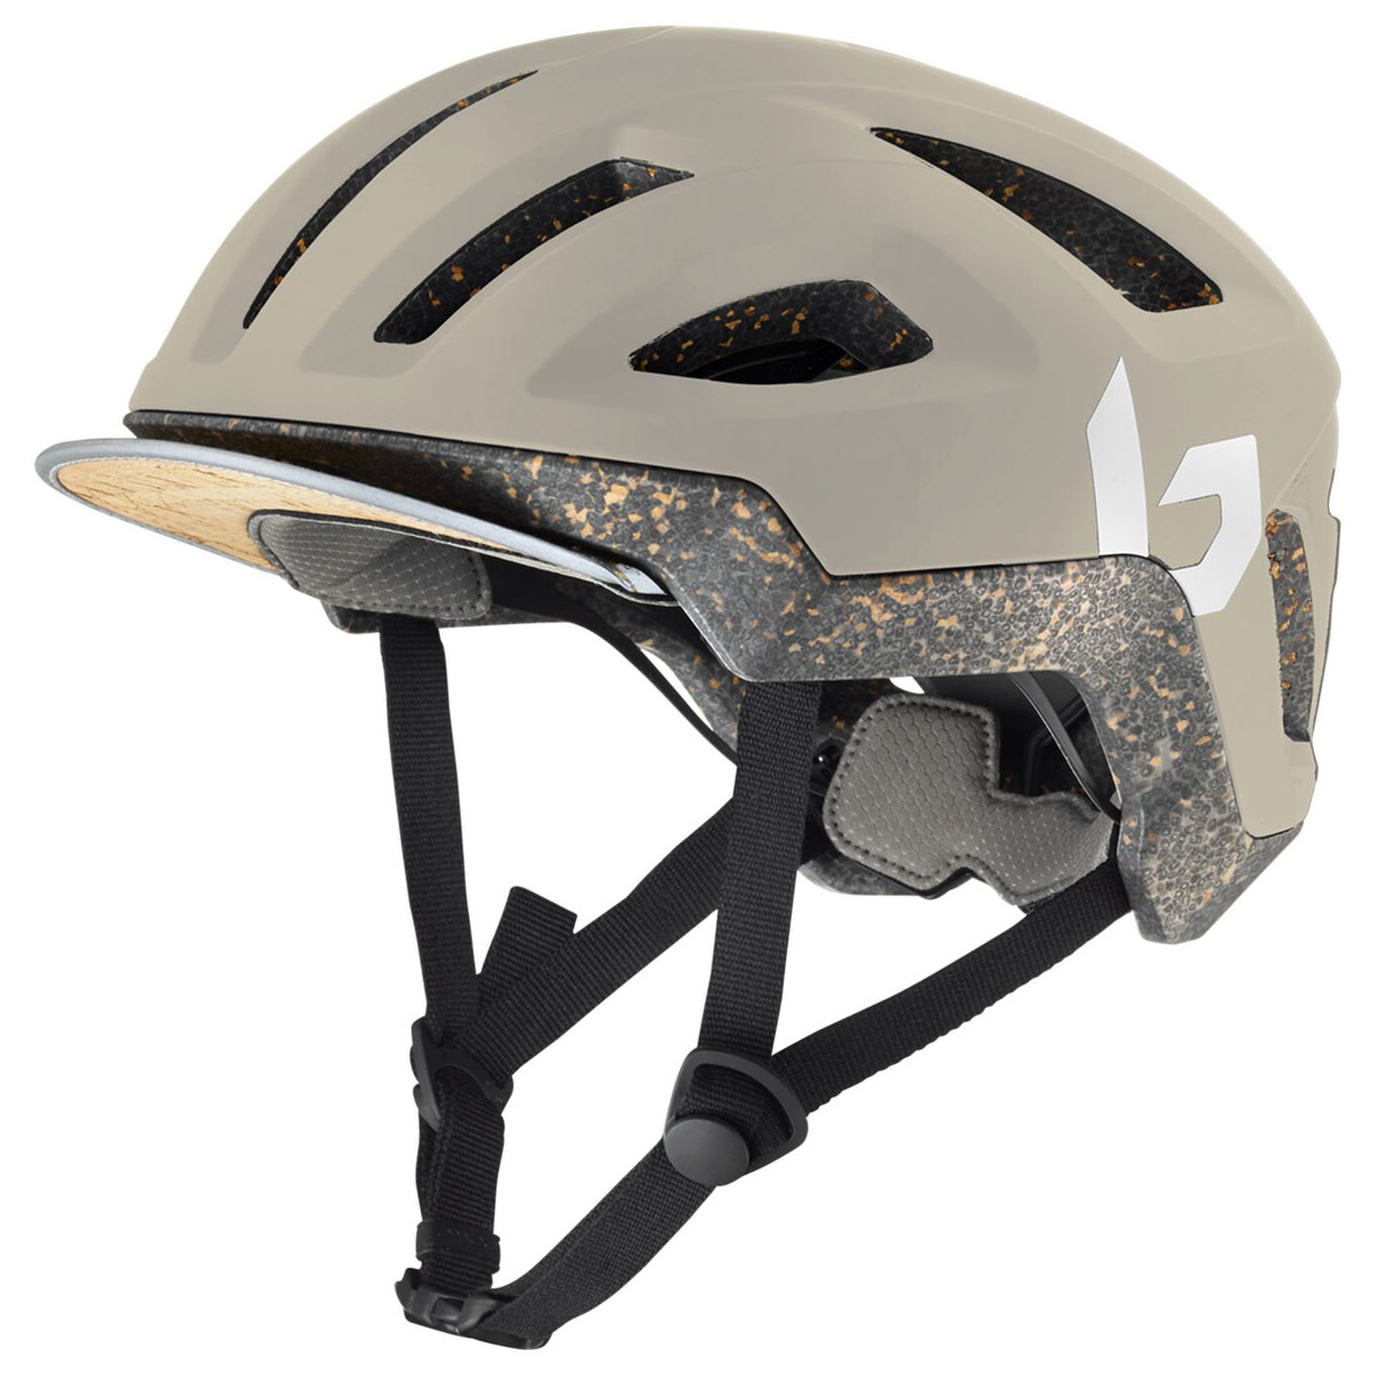 Велосипедный шлем Bollé Eco React, цвет Oatmeal Matte рога для шлема водонепроницаемый двусторонний клейкий резиновый симпатичный шлем дьявольские рога для шлема